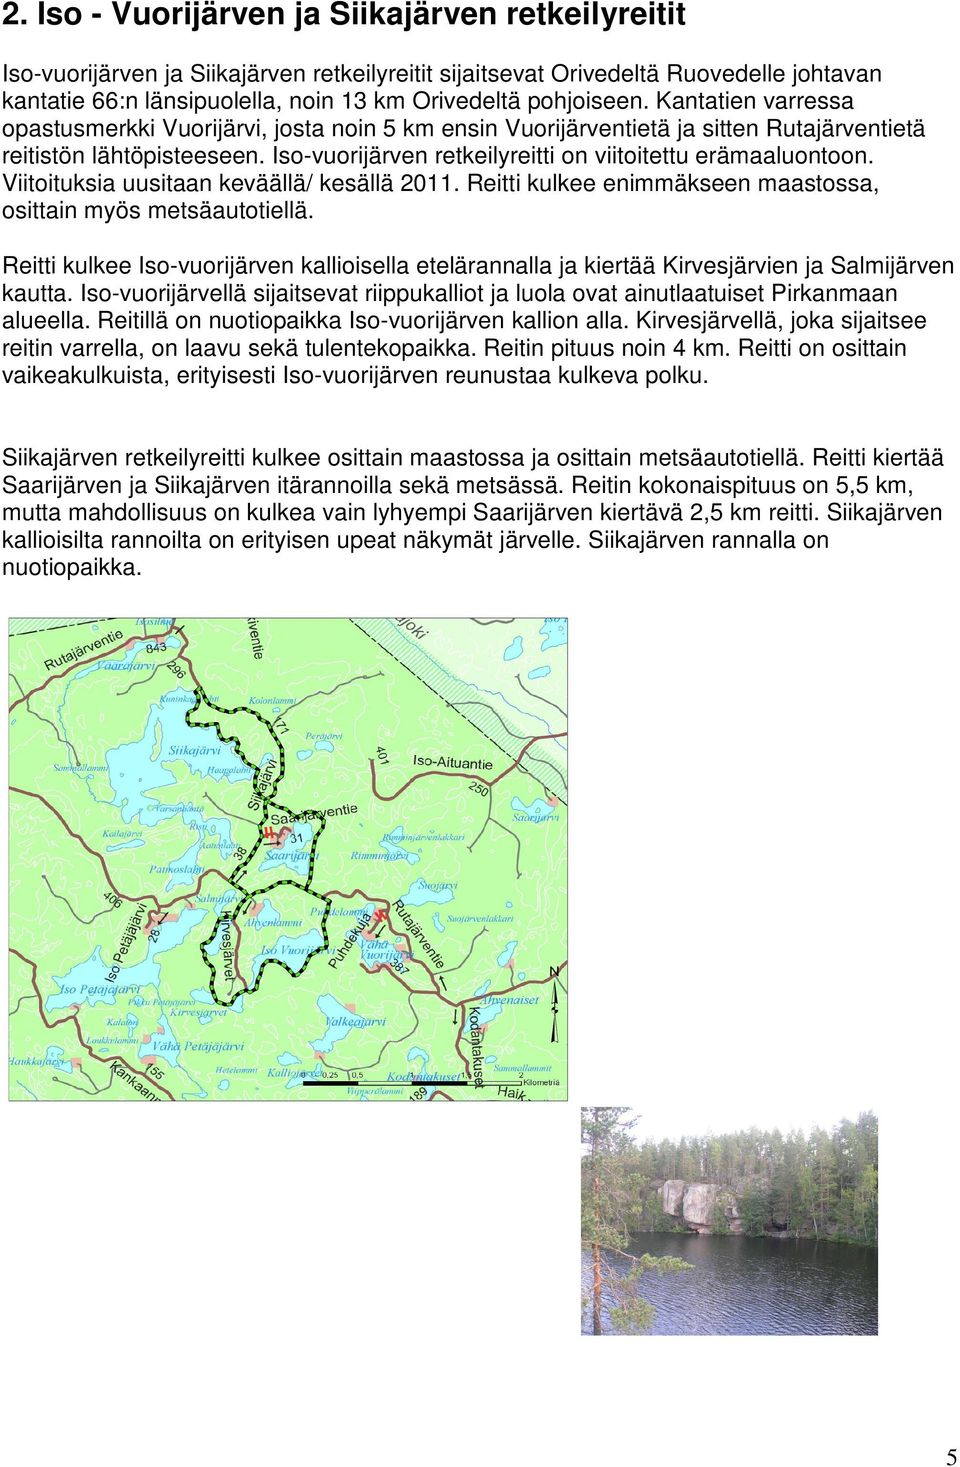 Iso-vuorijärven retkeilyreitti on viitoitettu erämaaluontoon. Viitoituksia uusitaan keväällä/ kesällä 2011. Reitti kulkee enimmäkseen maastossa, osittain myös metsäautotiellä.